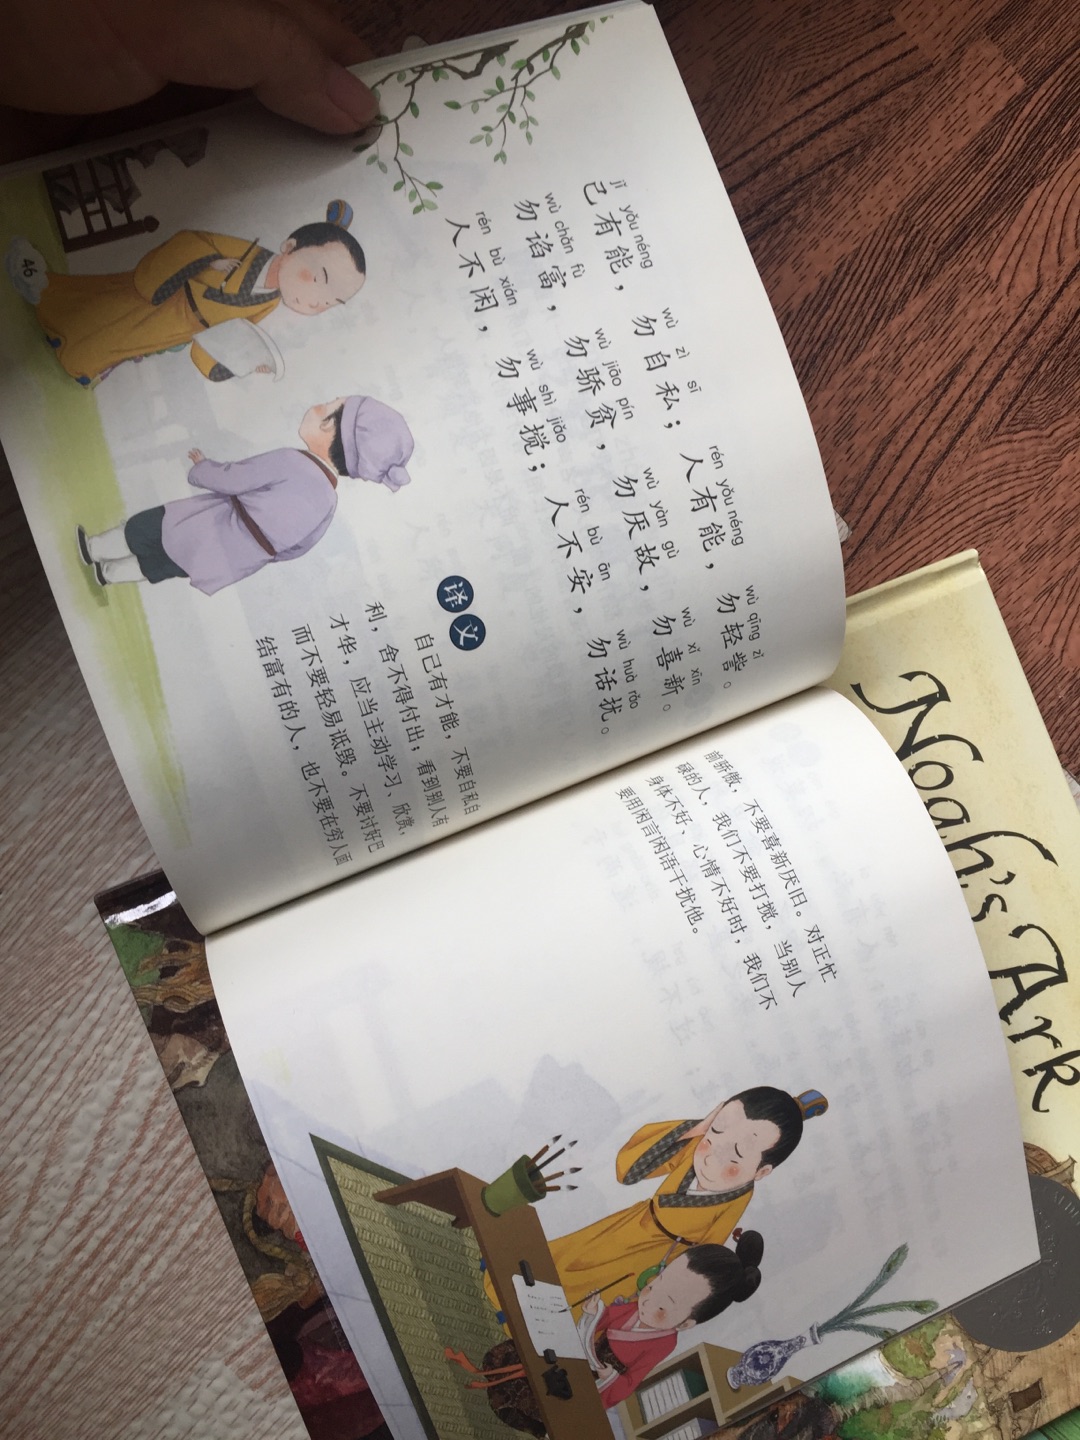 书质量不错，带拼音的很适合小学生自己看，每篇都有译文，让孩子容易理解，很好哦